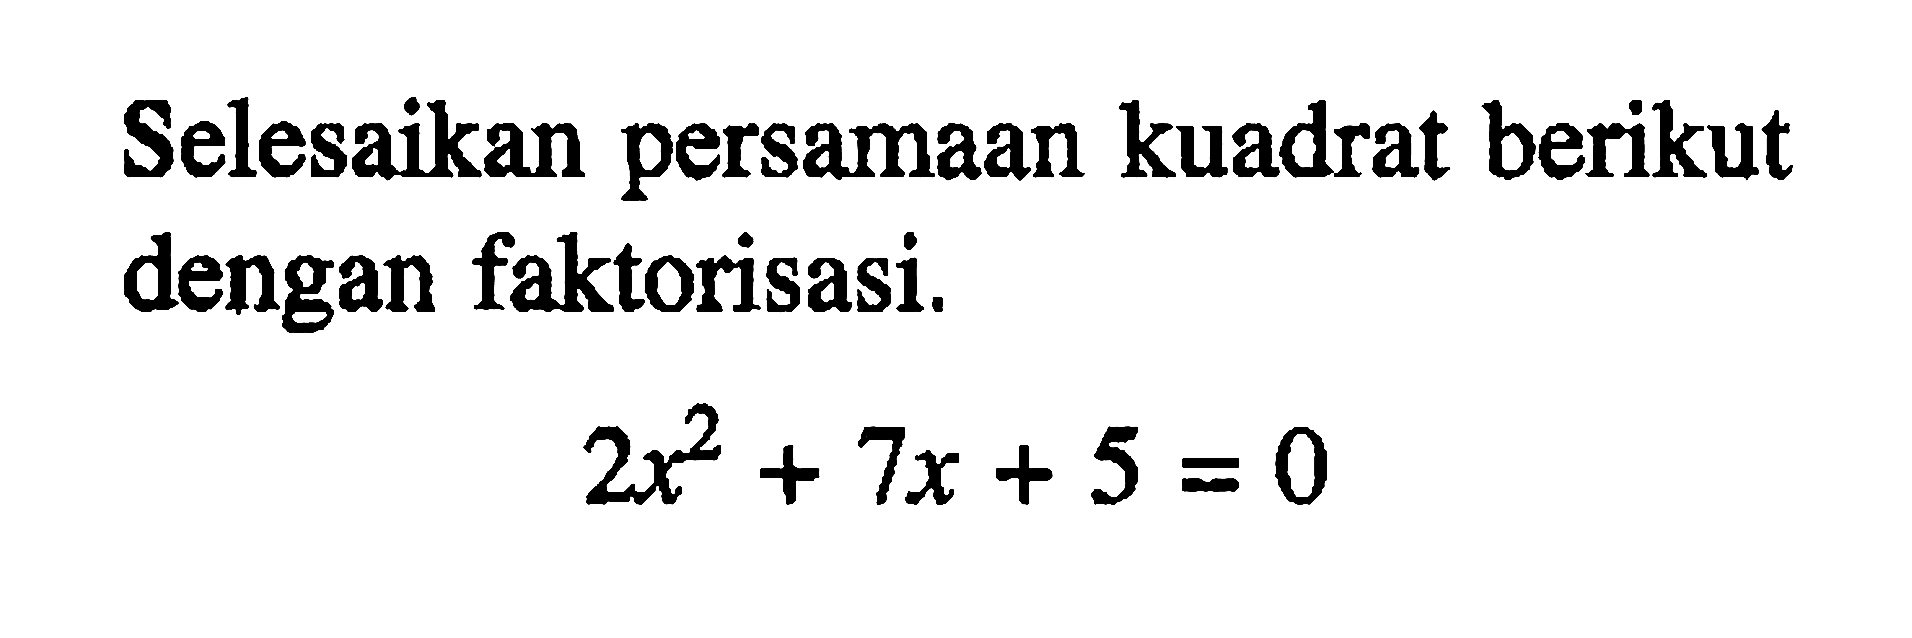 Selesaikan persamaan kuadrat berikut dengan faktorisasi. 2x^2 + 7x + 5 = 0